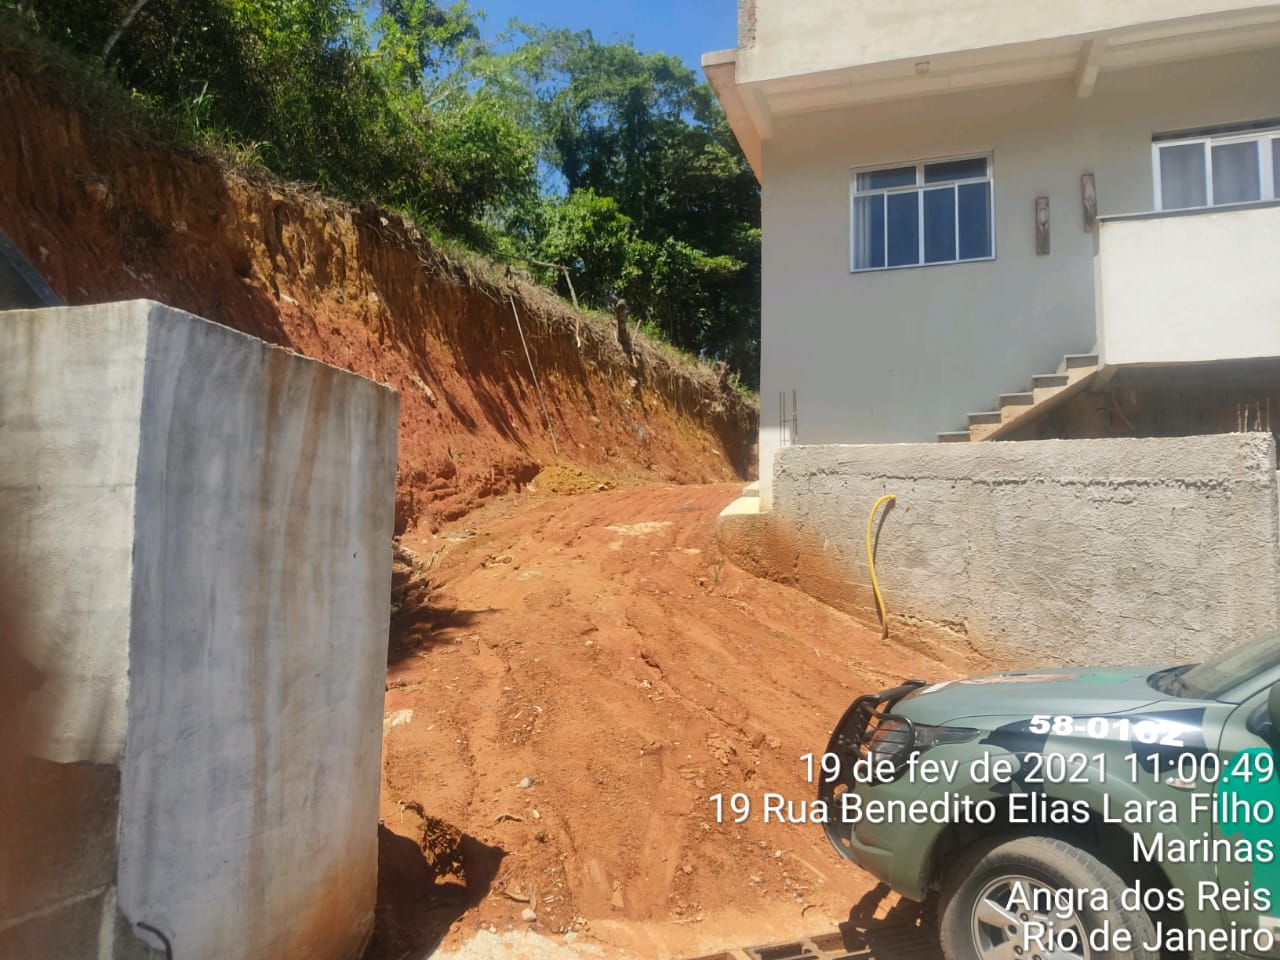 Local denunciado ao Linha Verde onde vinha ocorrendo extração irregular mineral em Angra dos Reis é encontrado por policiais ambientais